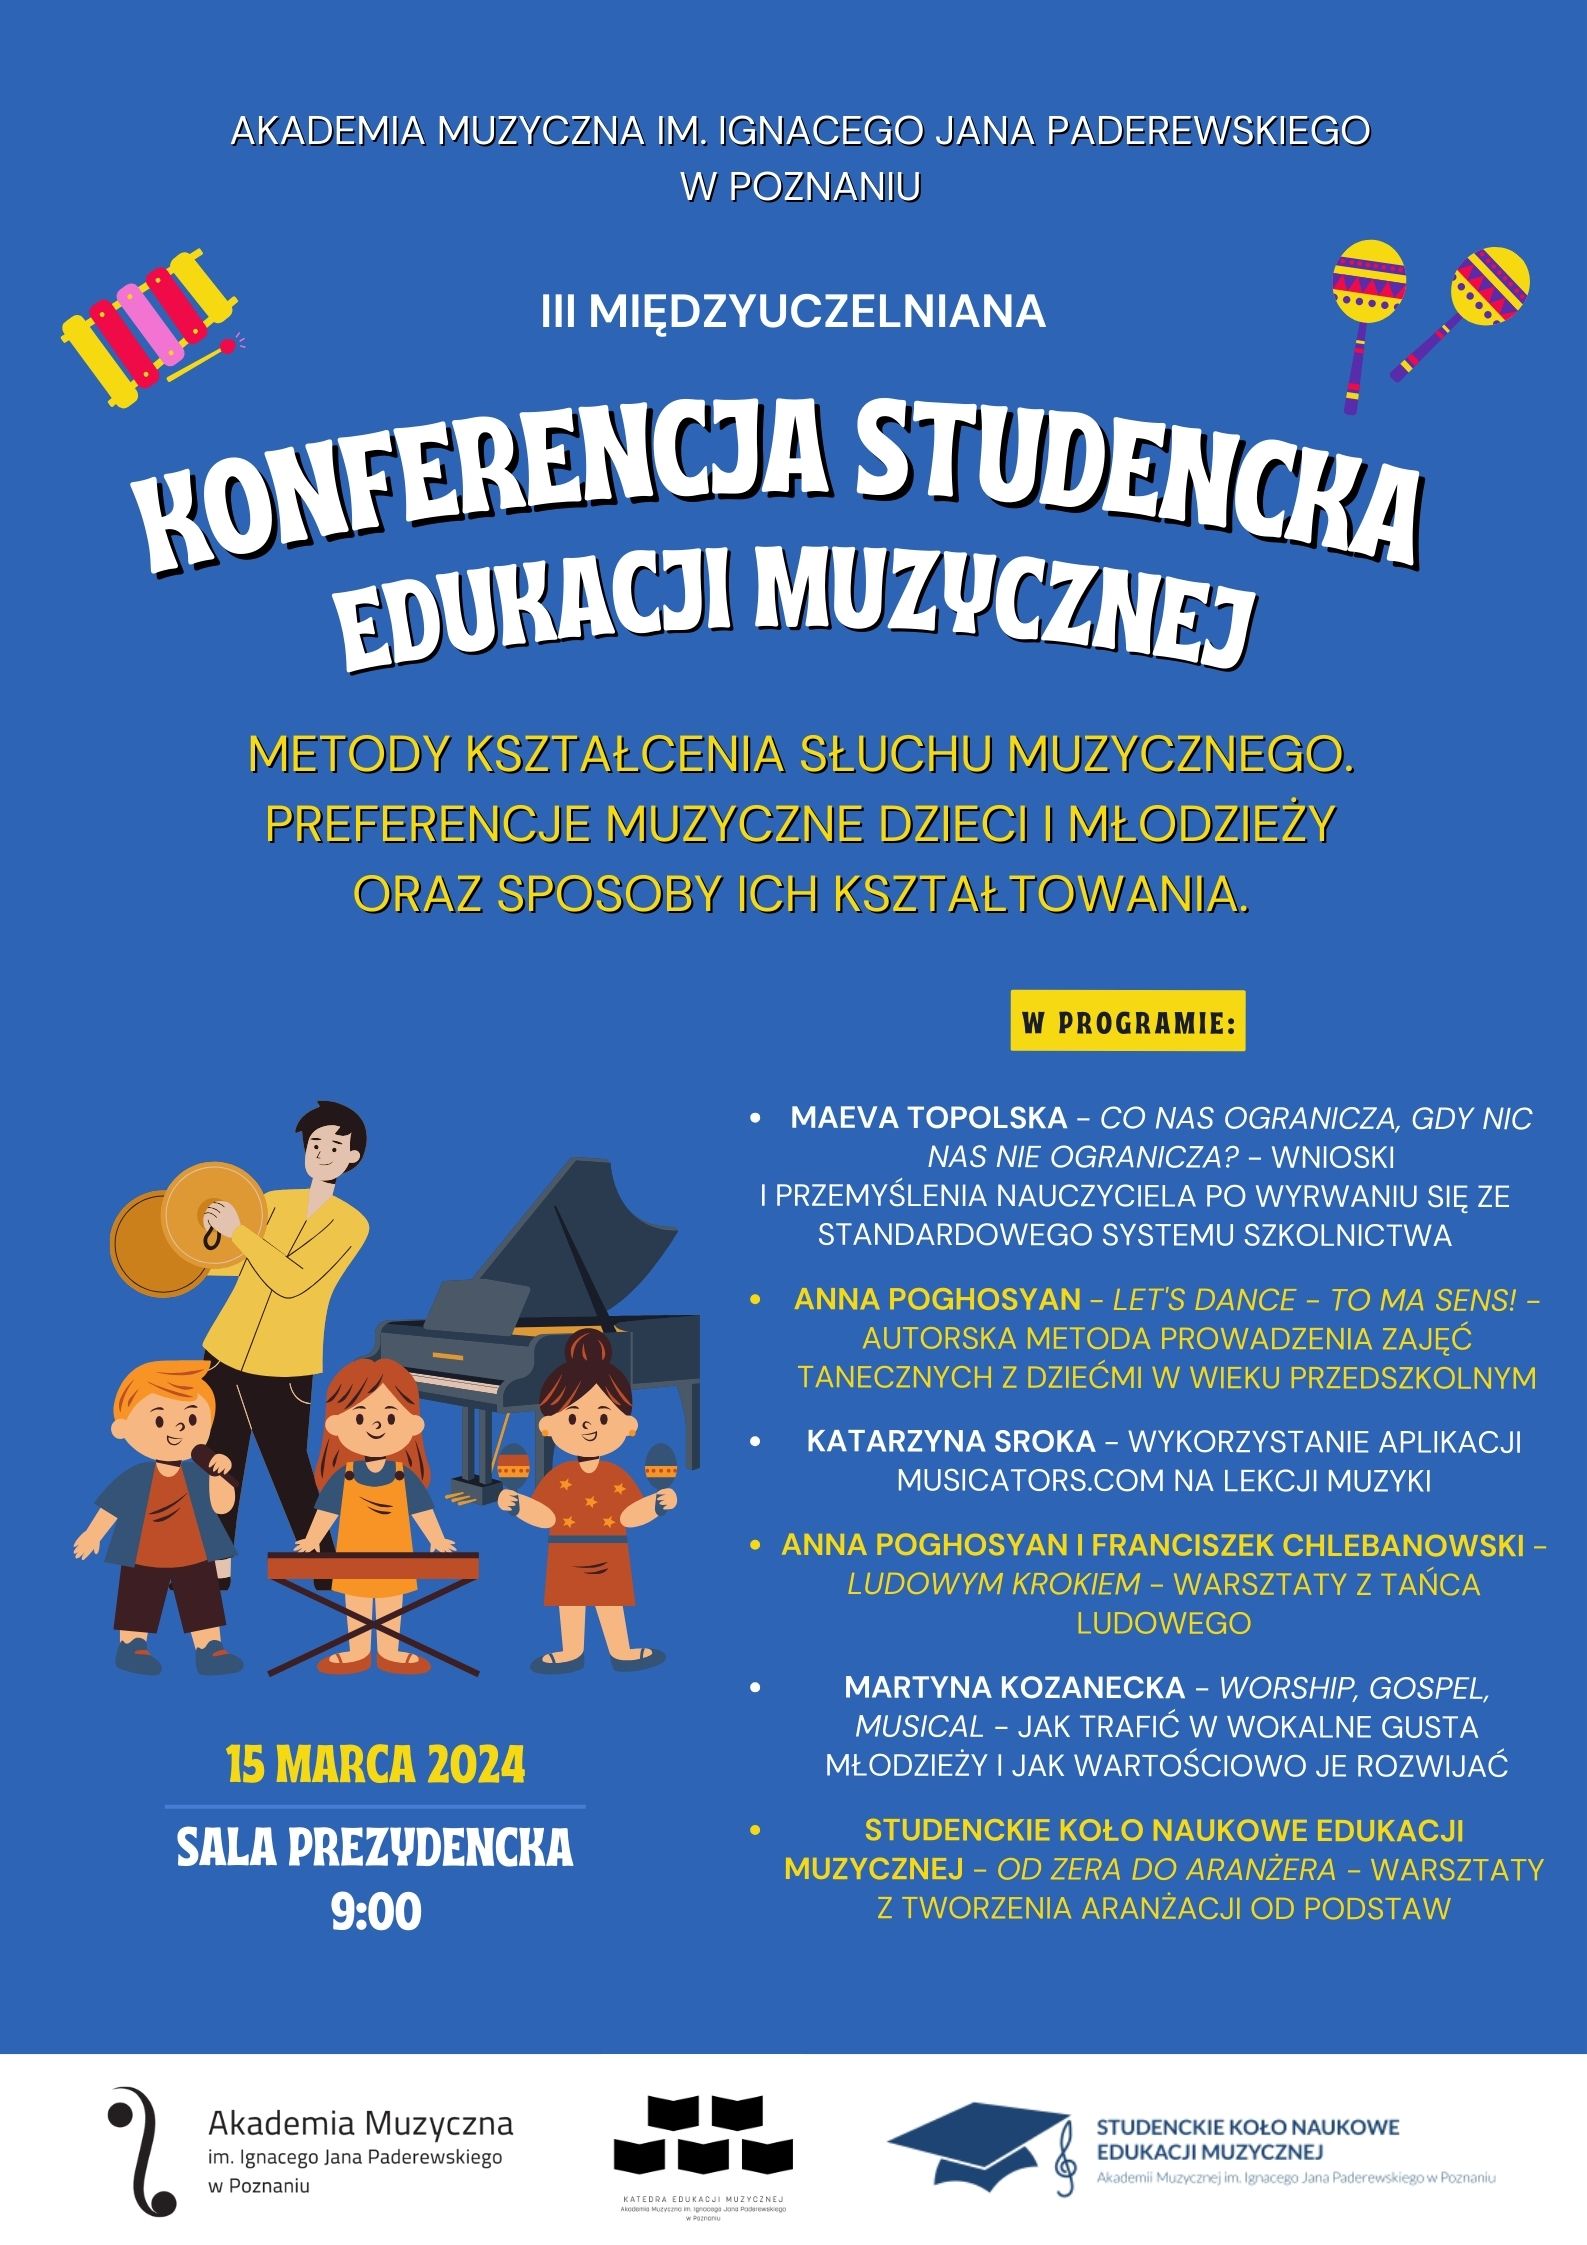 Afisz zawiera informacje na temat studenckiej konferencji edukacji muzycznej